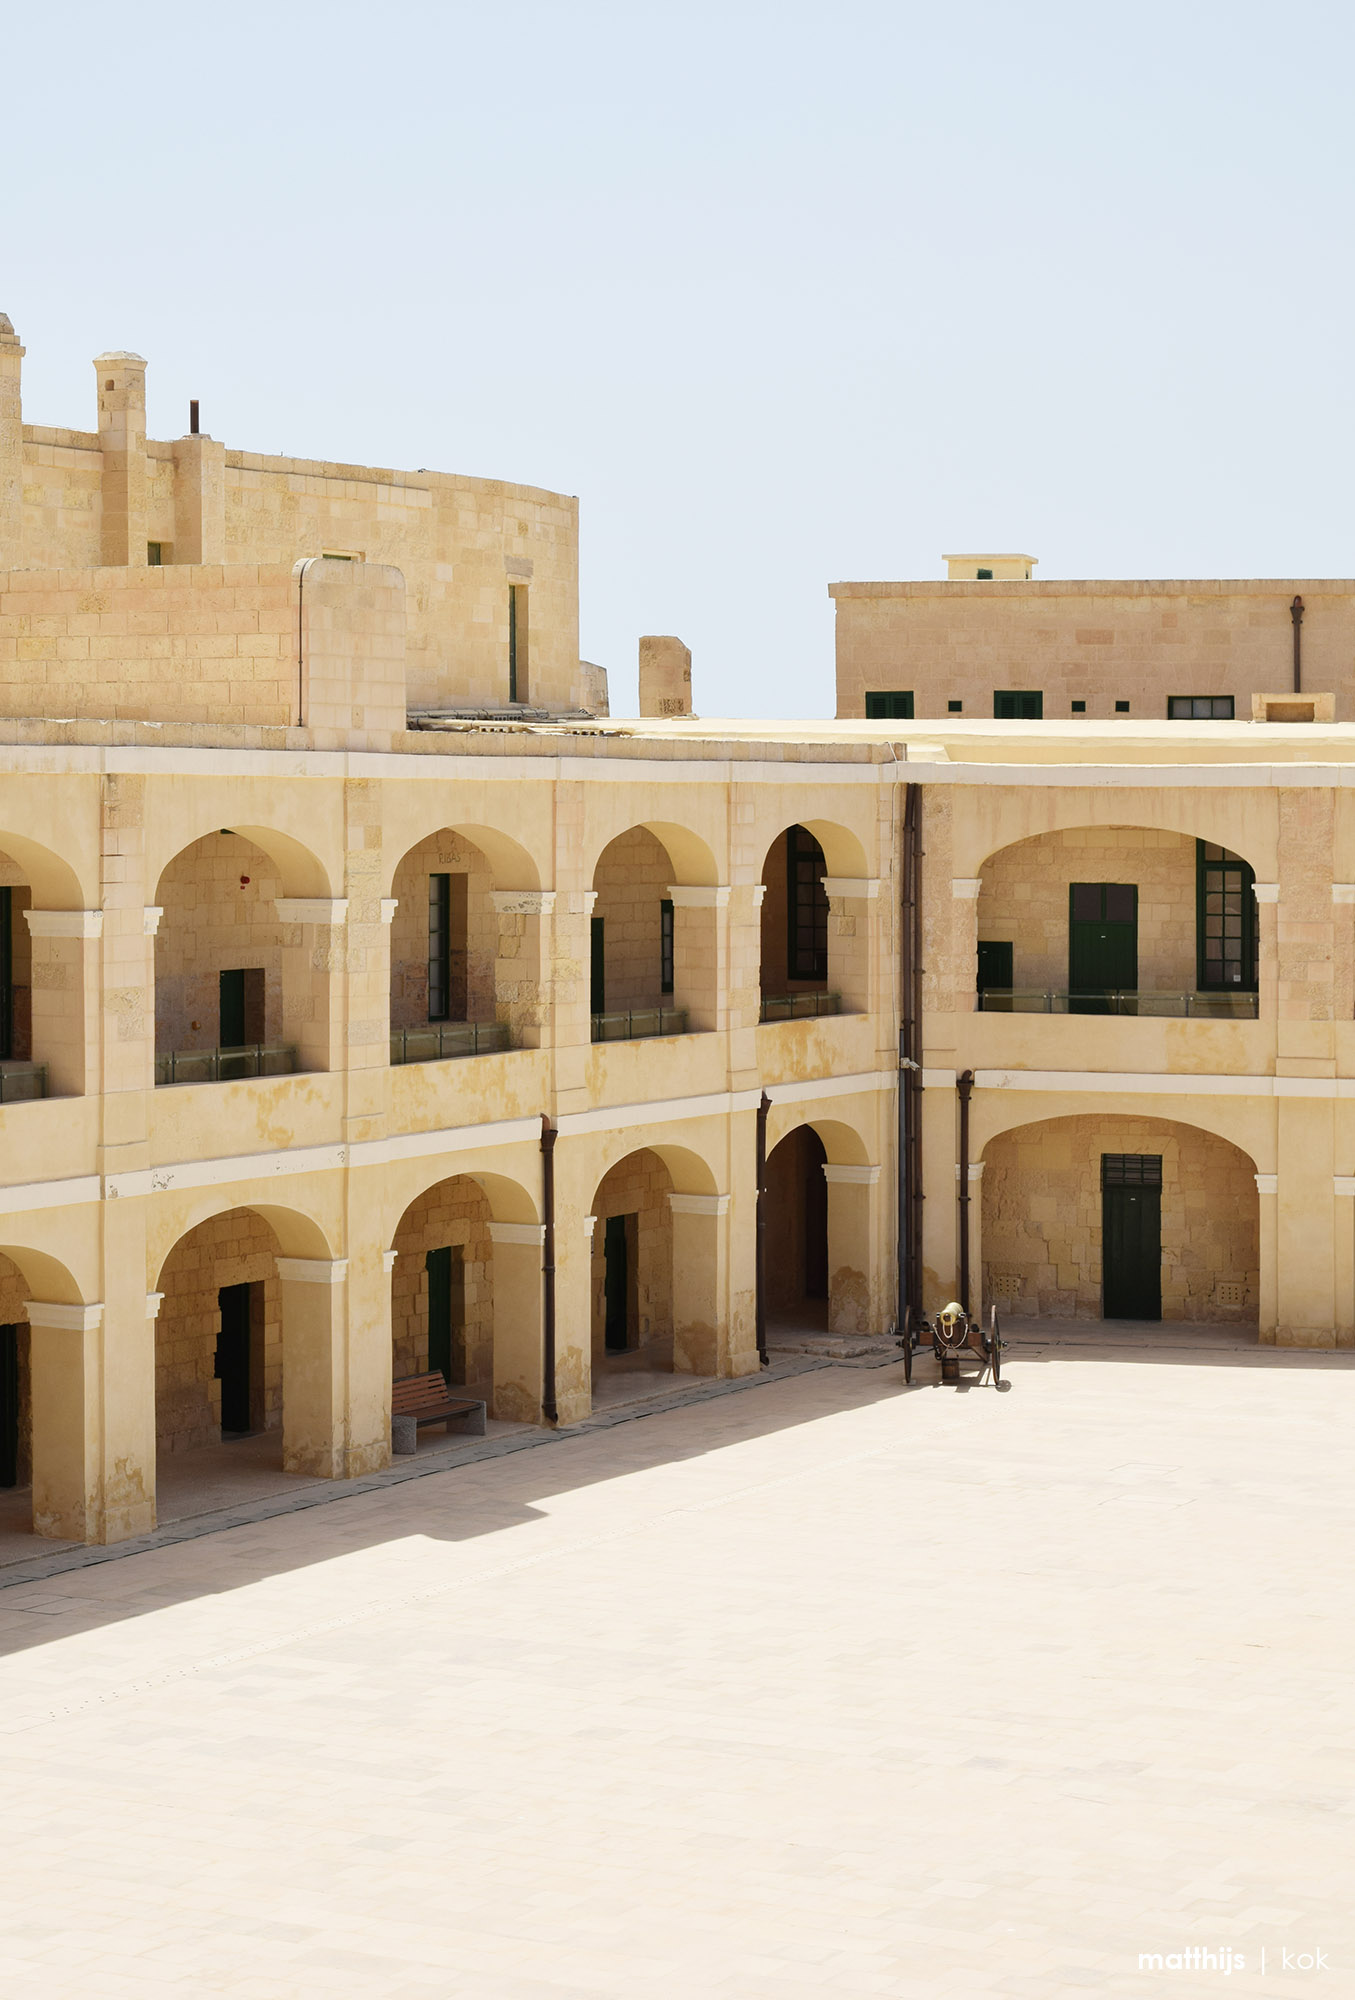 St. Elmo Fortress, Valletta, Malta | Photo by Matthijs Kok